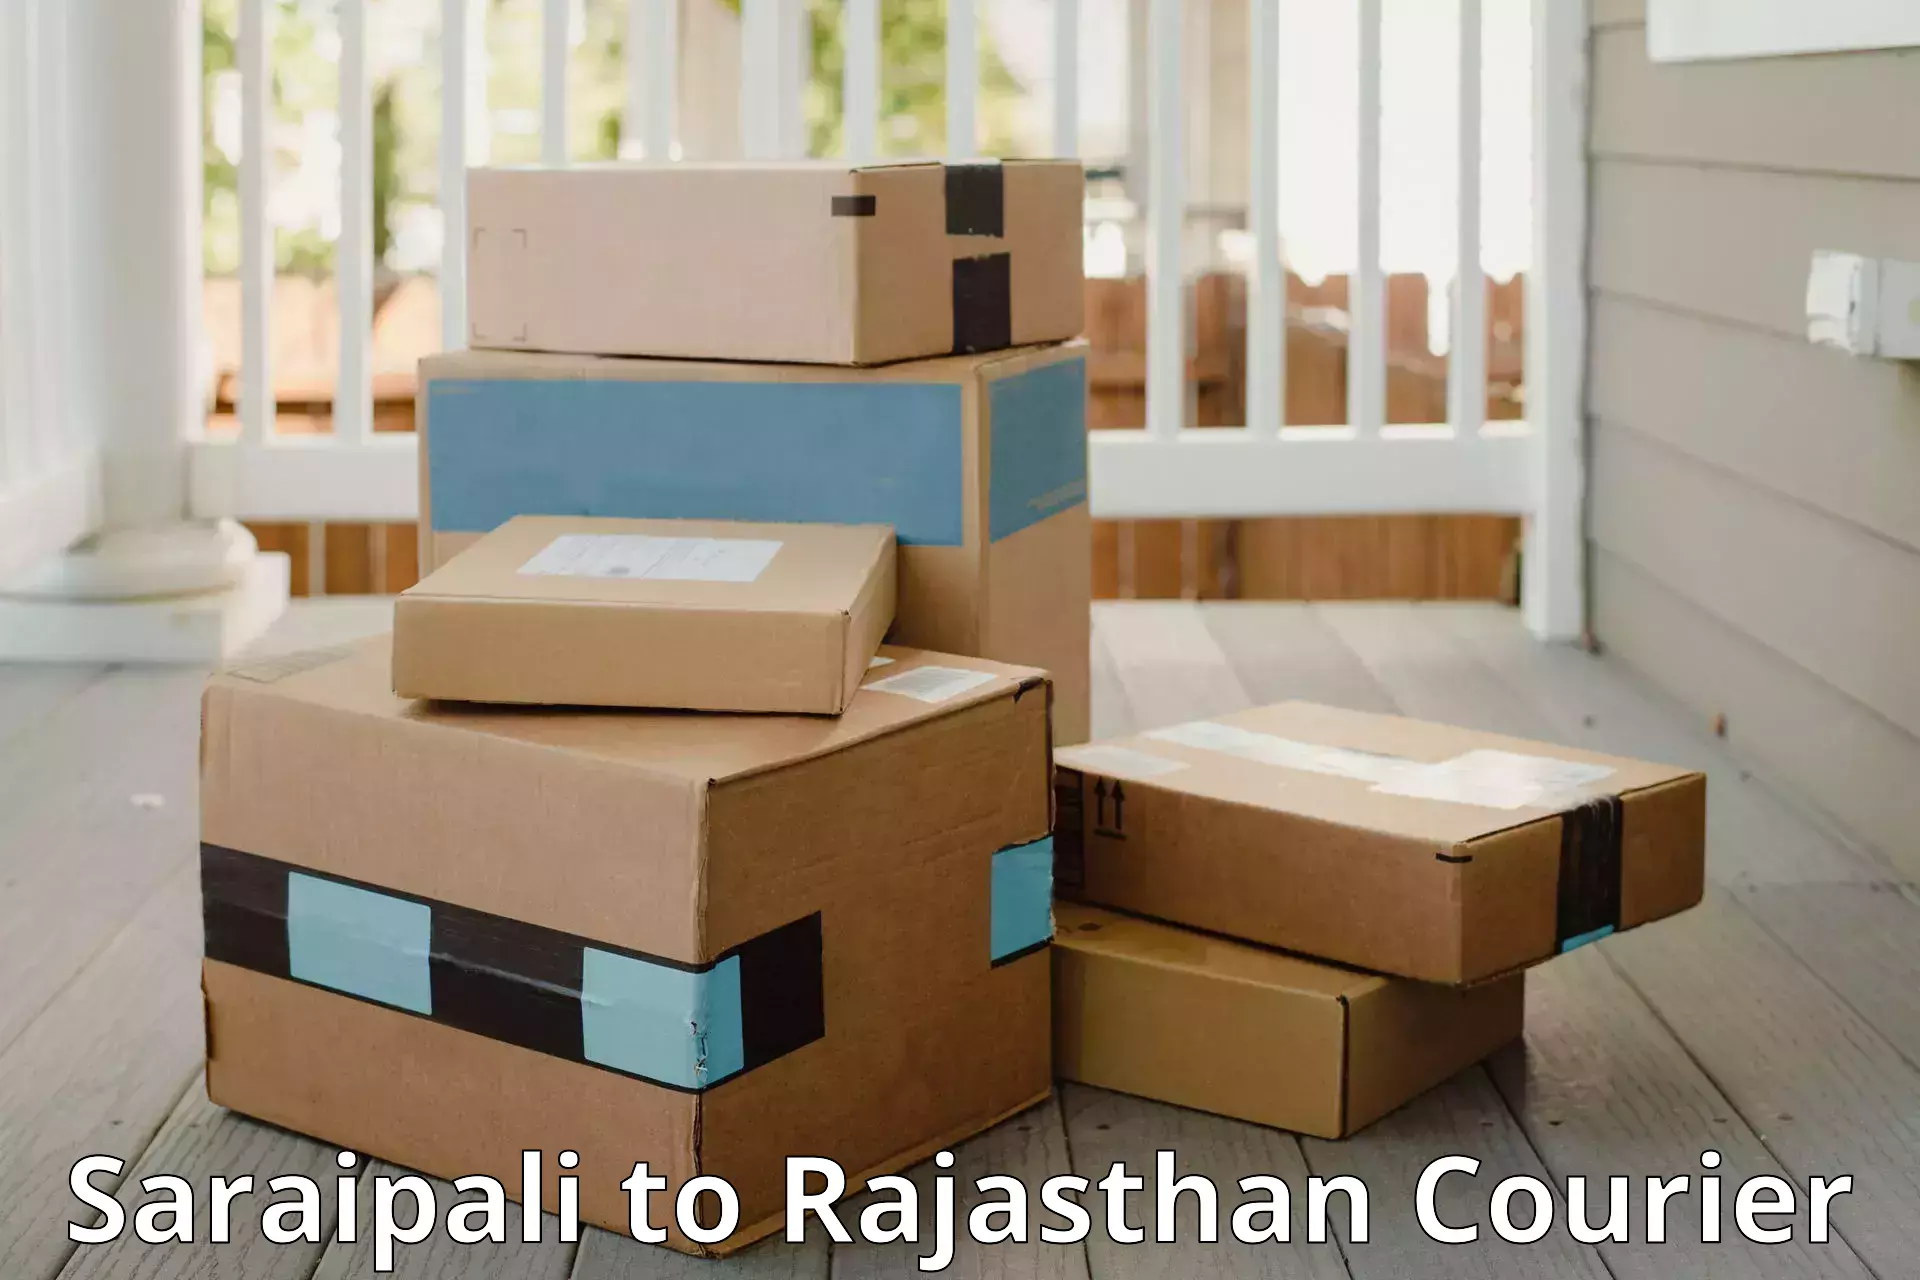 Baggage transport network Saraipali to Pratapgarh Rajasthan